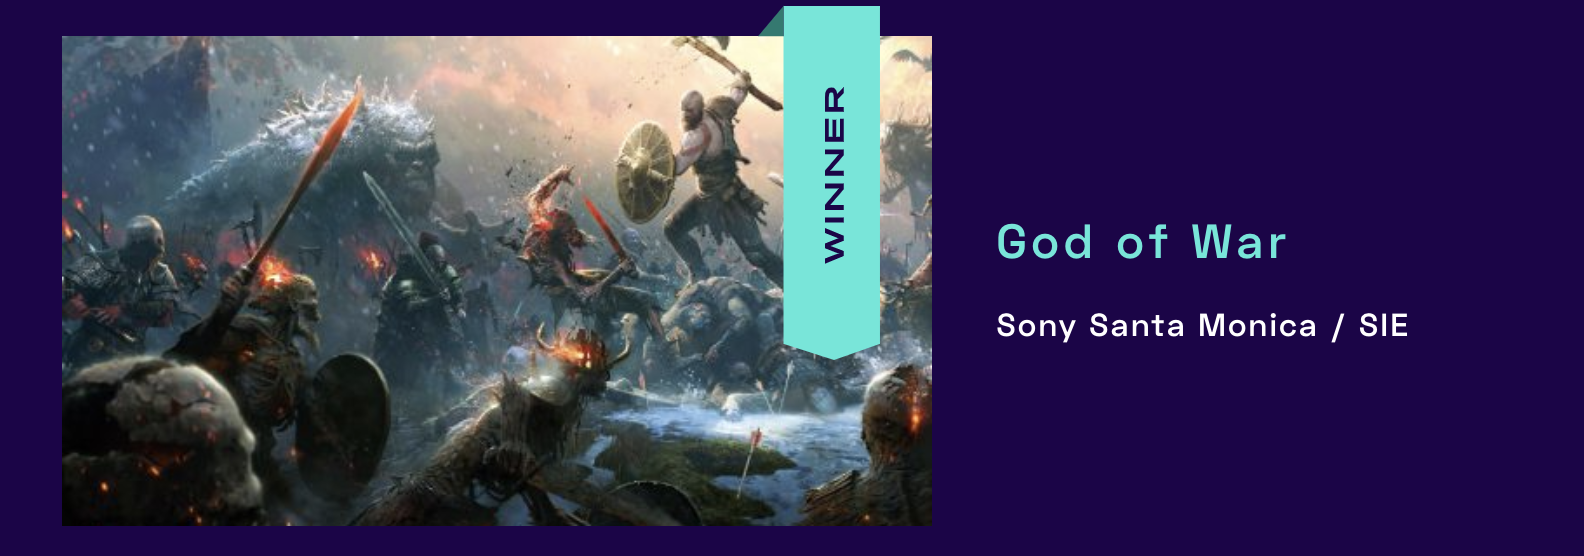 รวมผลรางวัลจากเวที The Game Awards 2018! God Of War คว้ารางวัลใหญ่ Game of  the Year - GG2